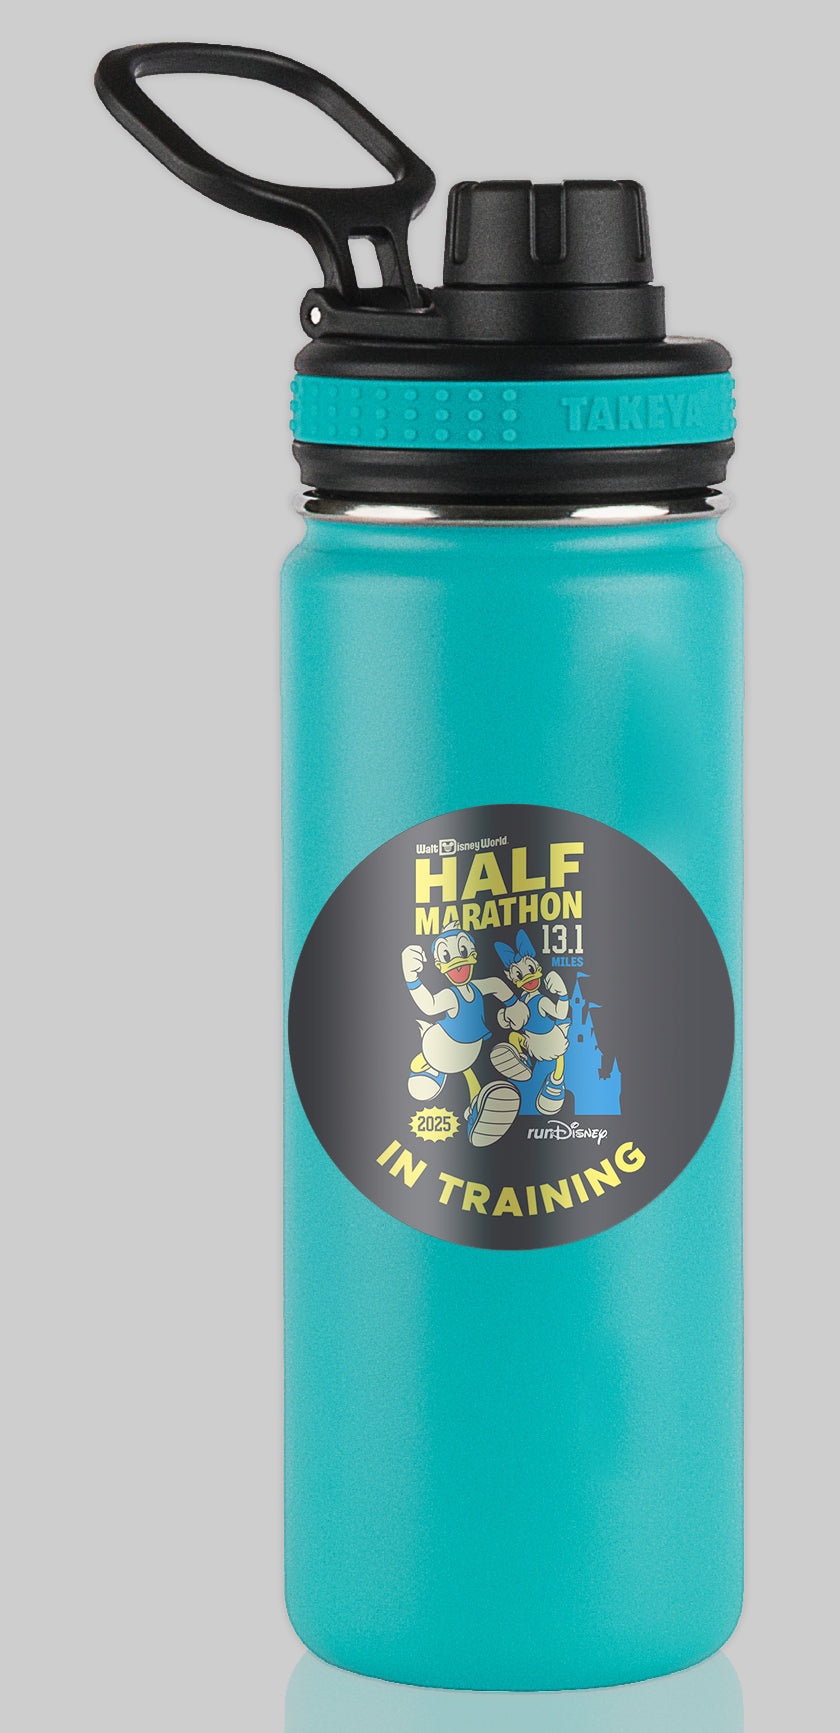 RunDisney Marathon Weekend 2025 Half Marathon 13.1 Miles IN TRAINING Water Bottle Mug Sticker